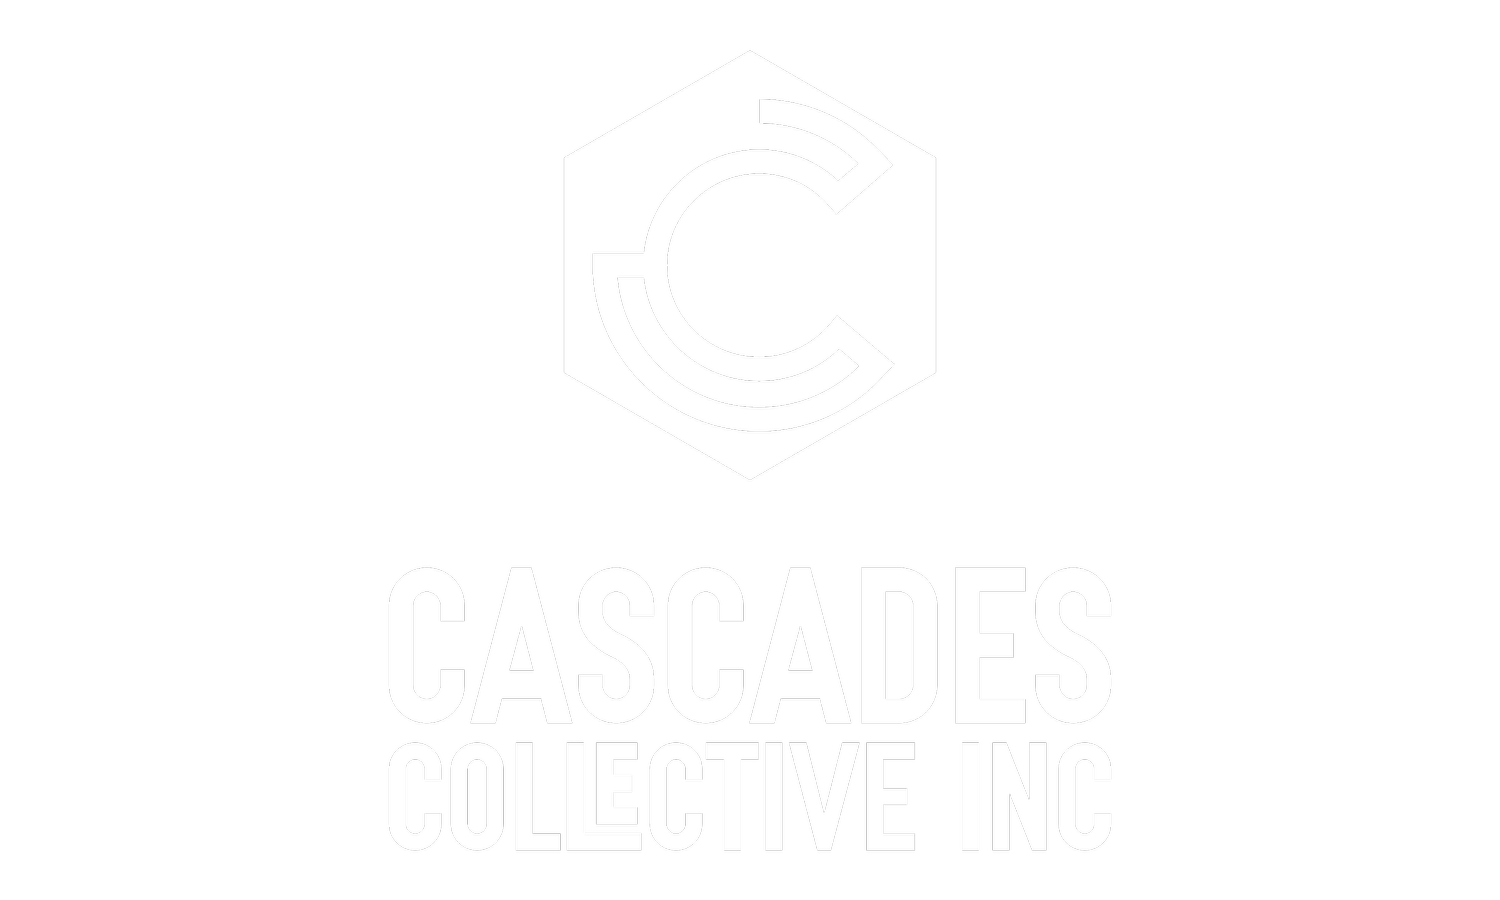 The Cascades Collective Inc.